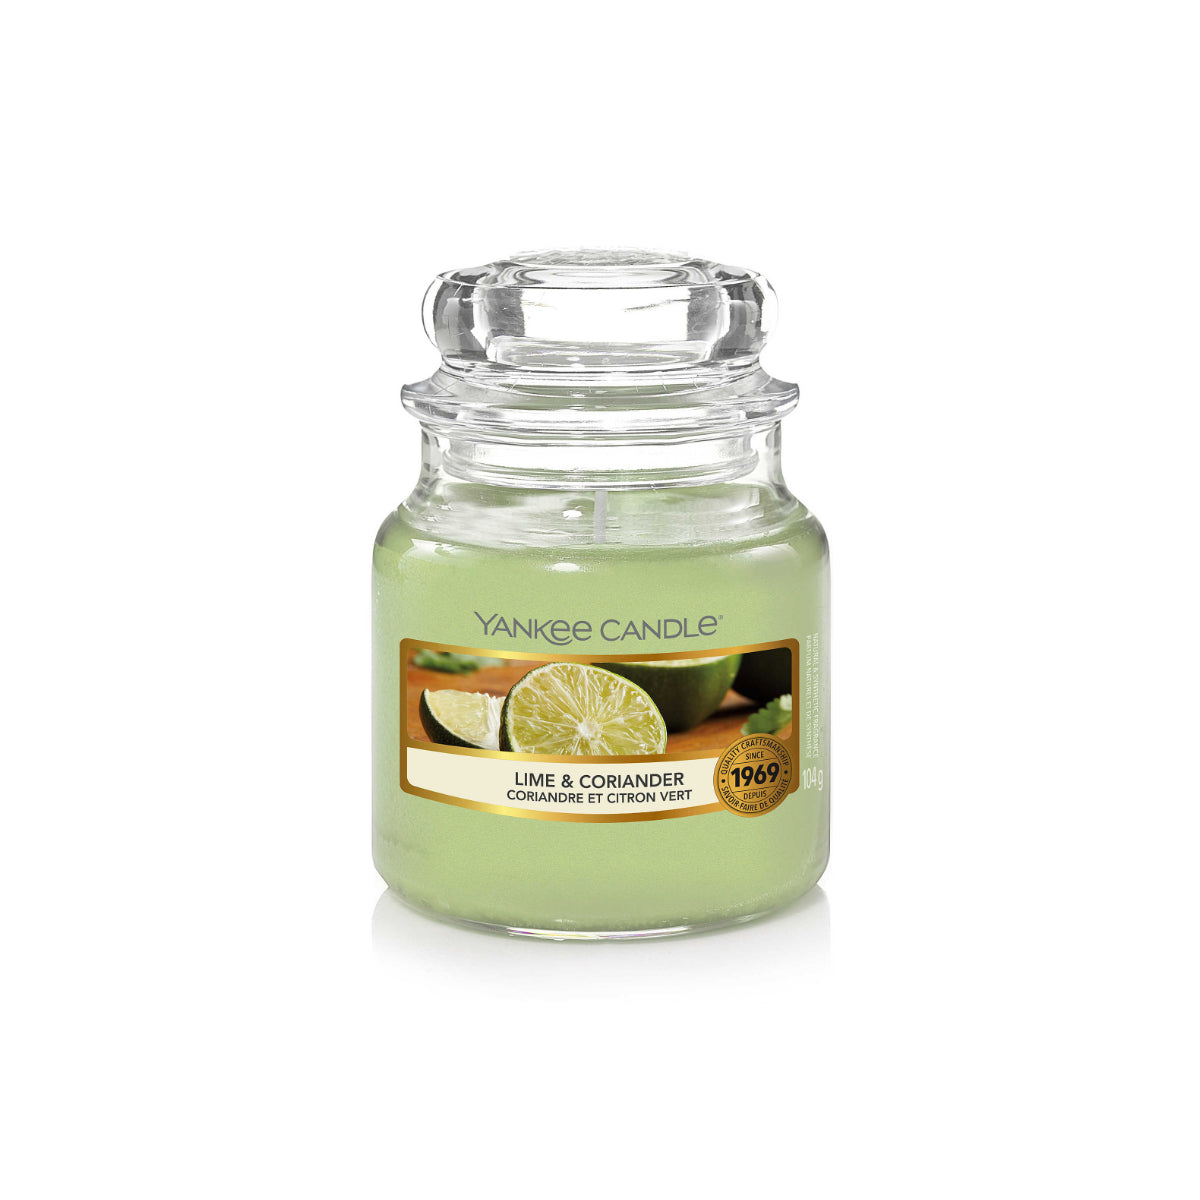 Jarro vela pequeno com a fragrância Lime & coriander da yankee candle